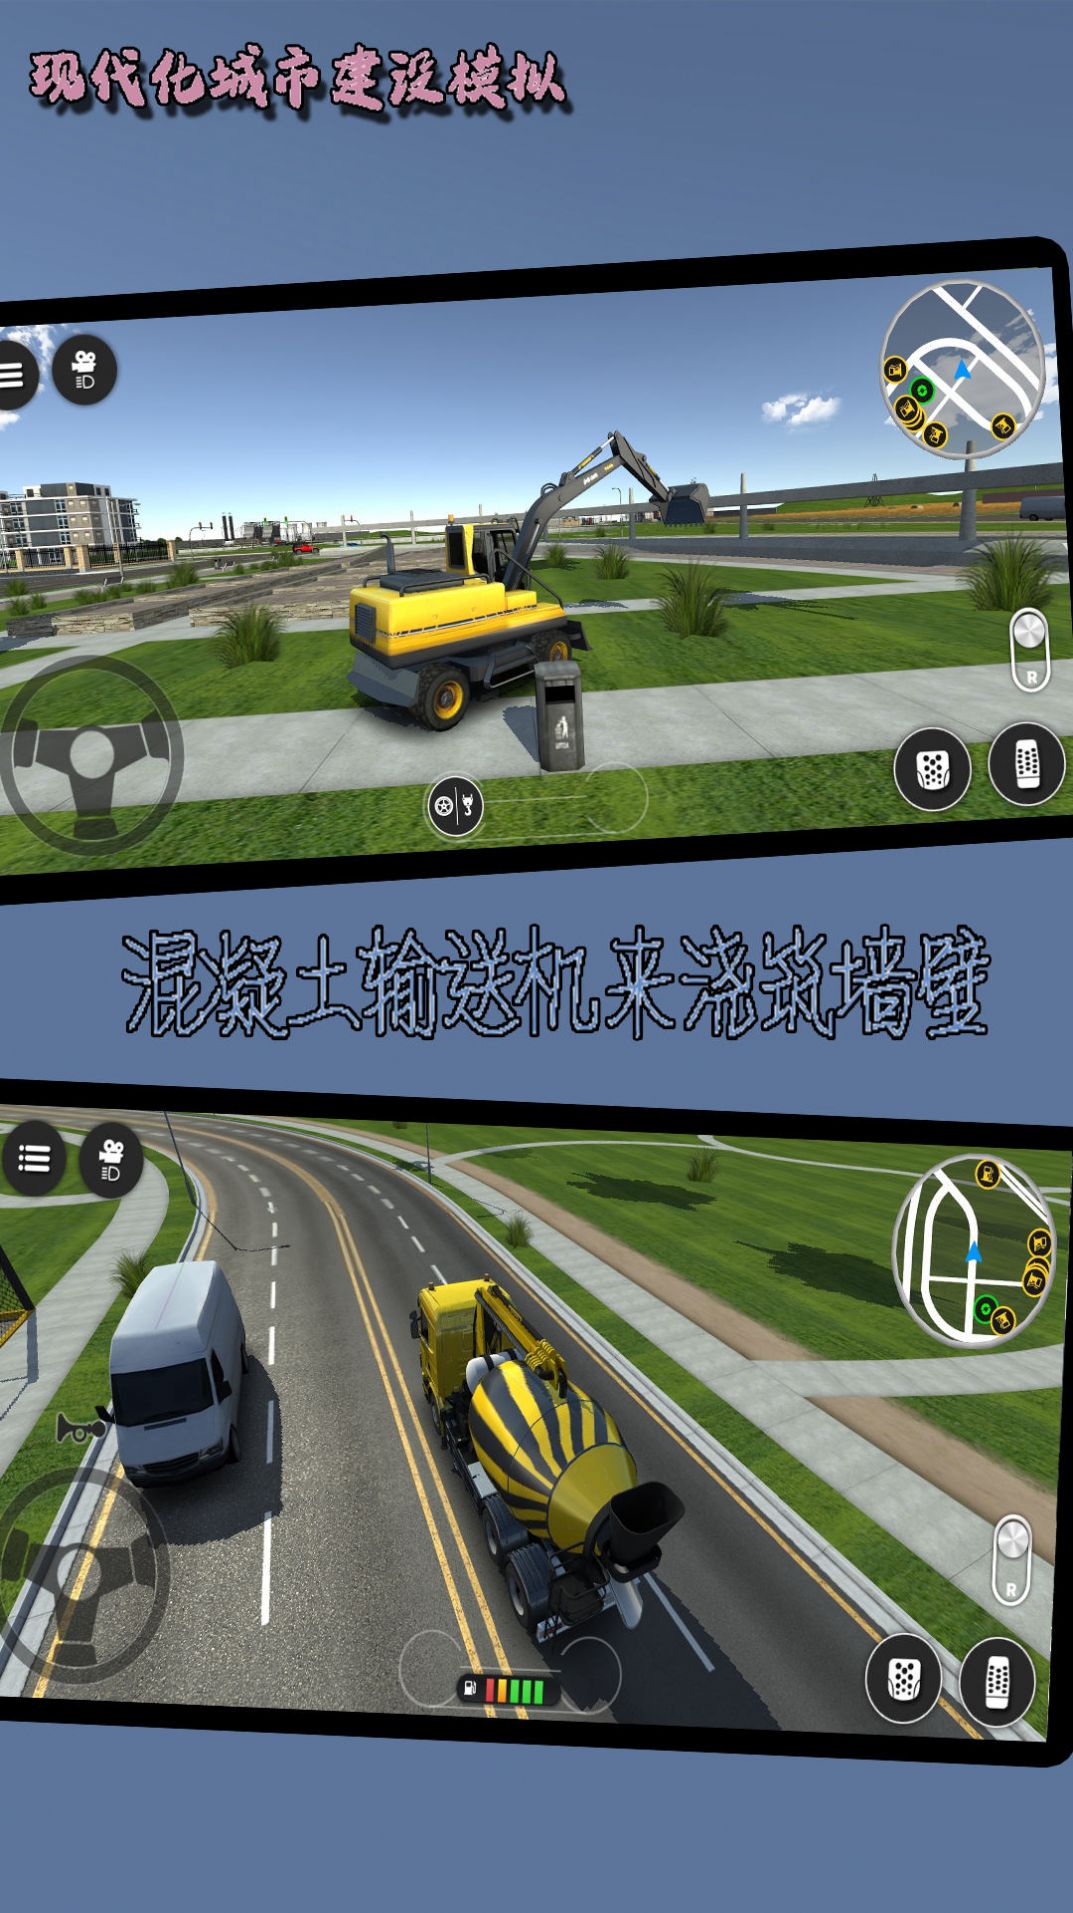 现代化城市建设模拟手游下载 v1021.101.10 安卓版3